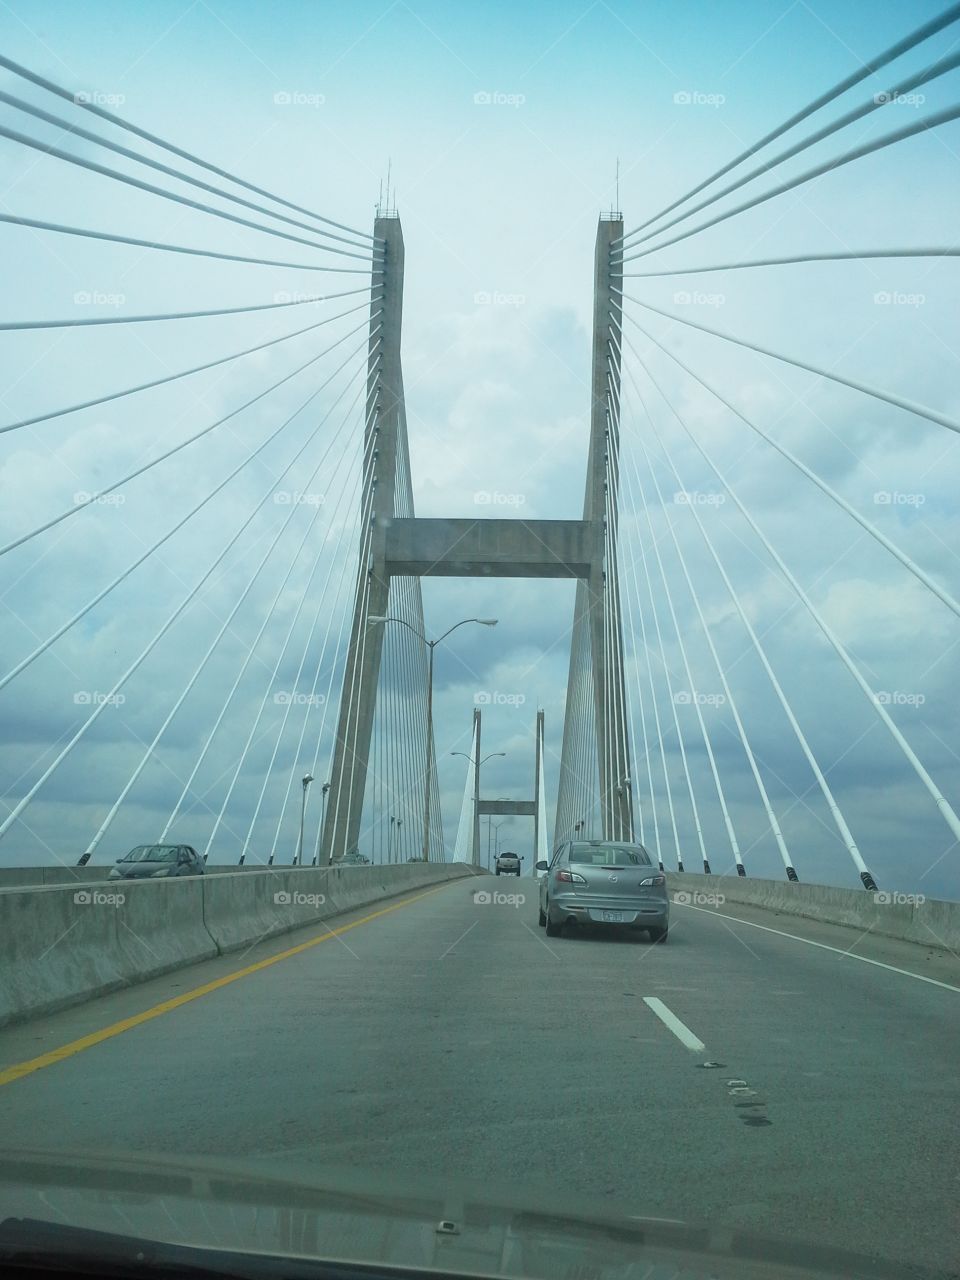 Suspension bridge going to Savannah.